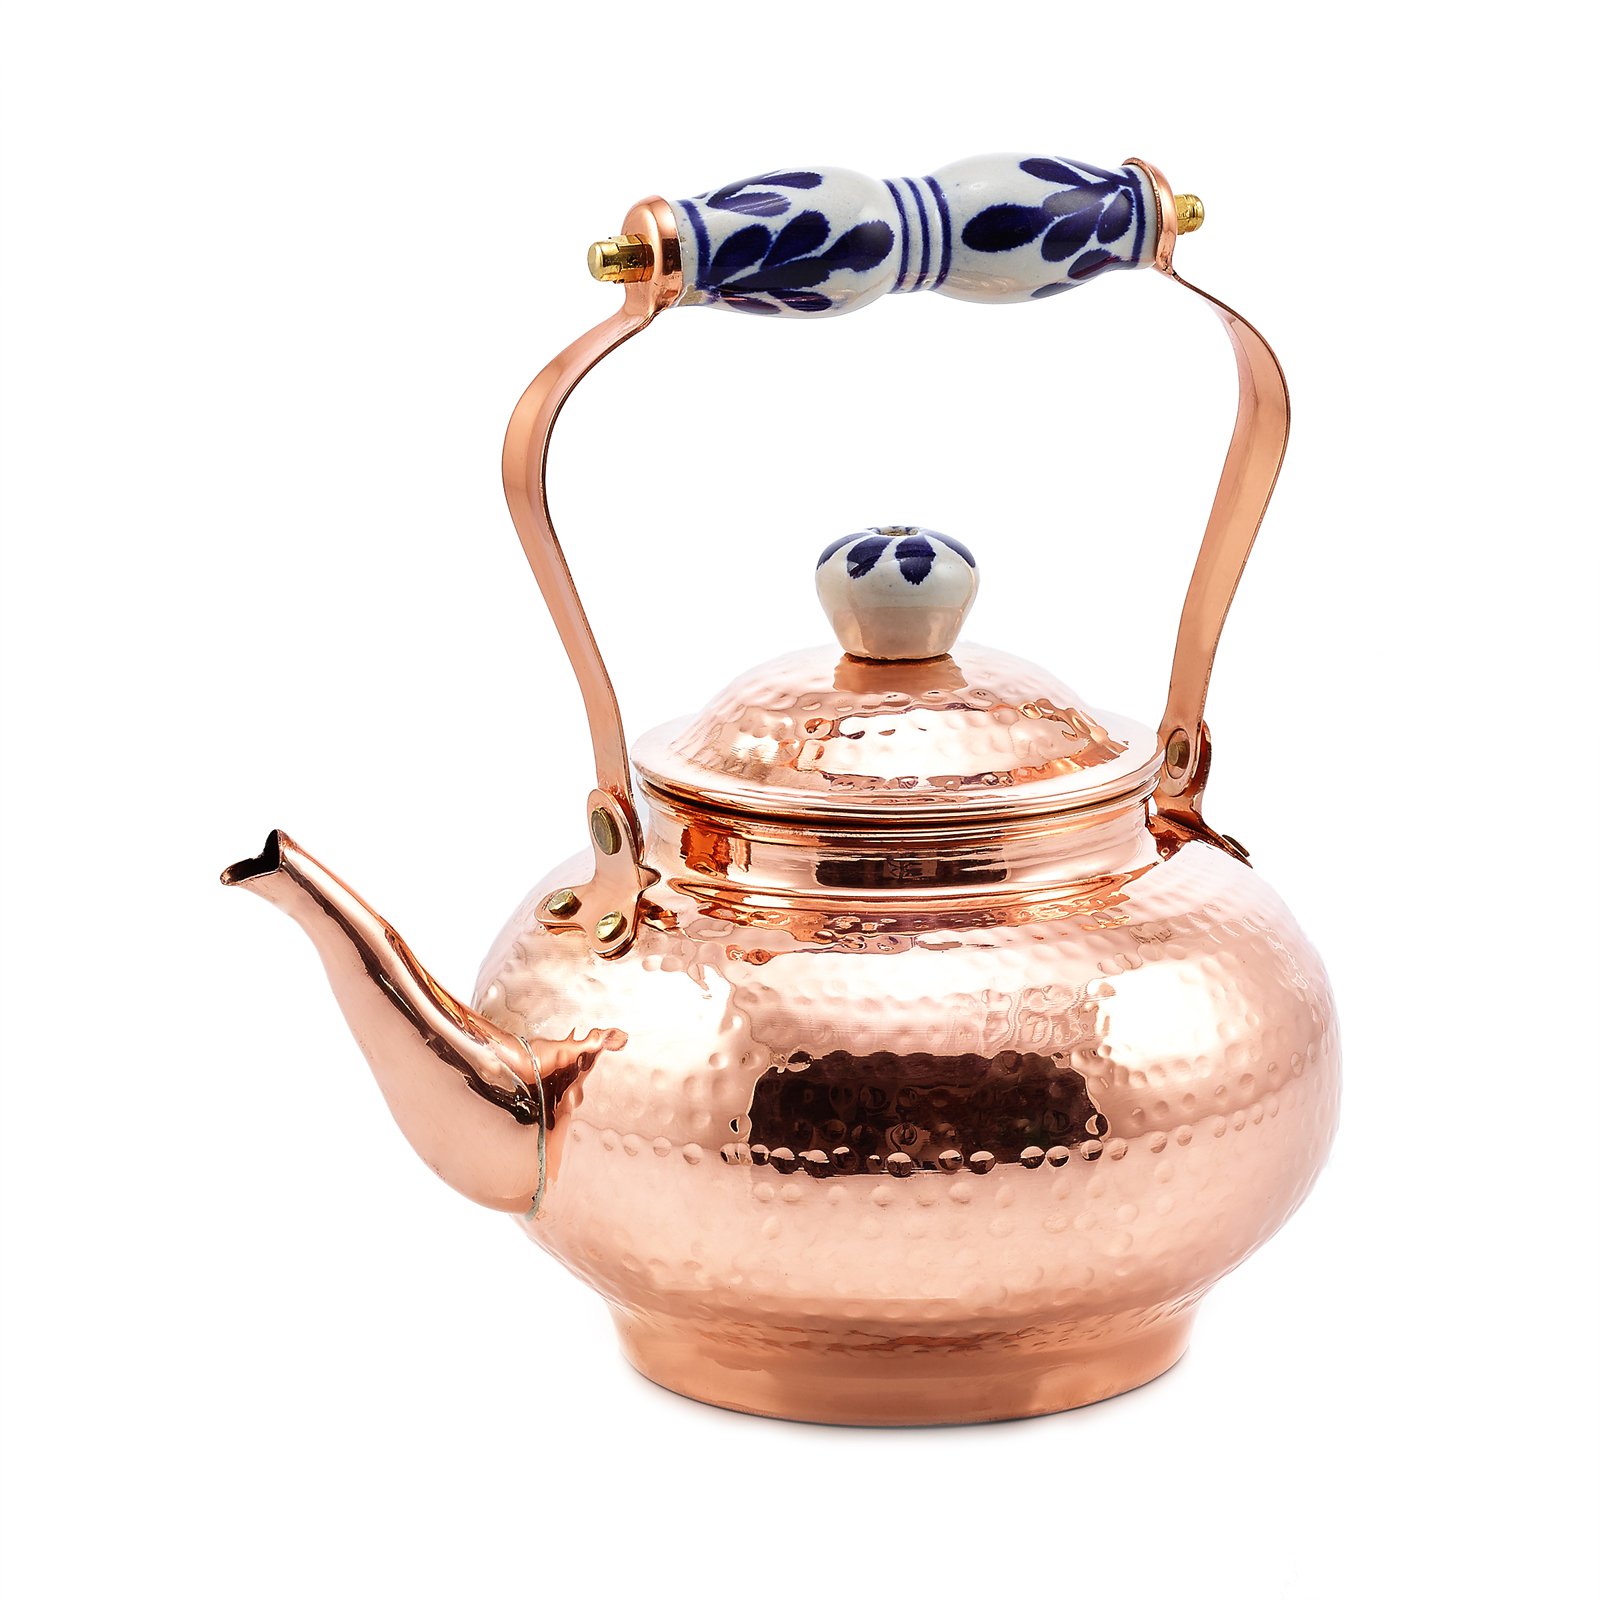 Small 1.8 Litre Size Vintage Copper Tea Kettle From Finland  Vintage  copper tea kettle, Copper tea kettle, Vintage copper